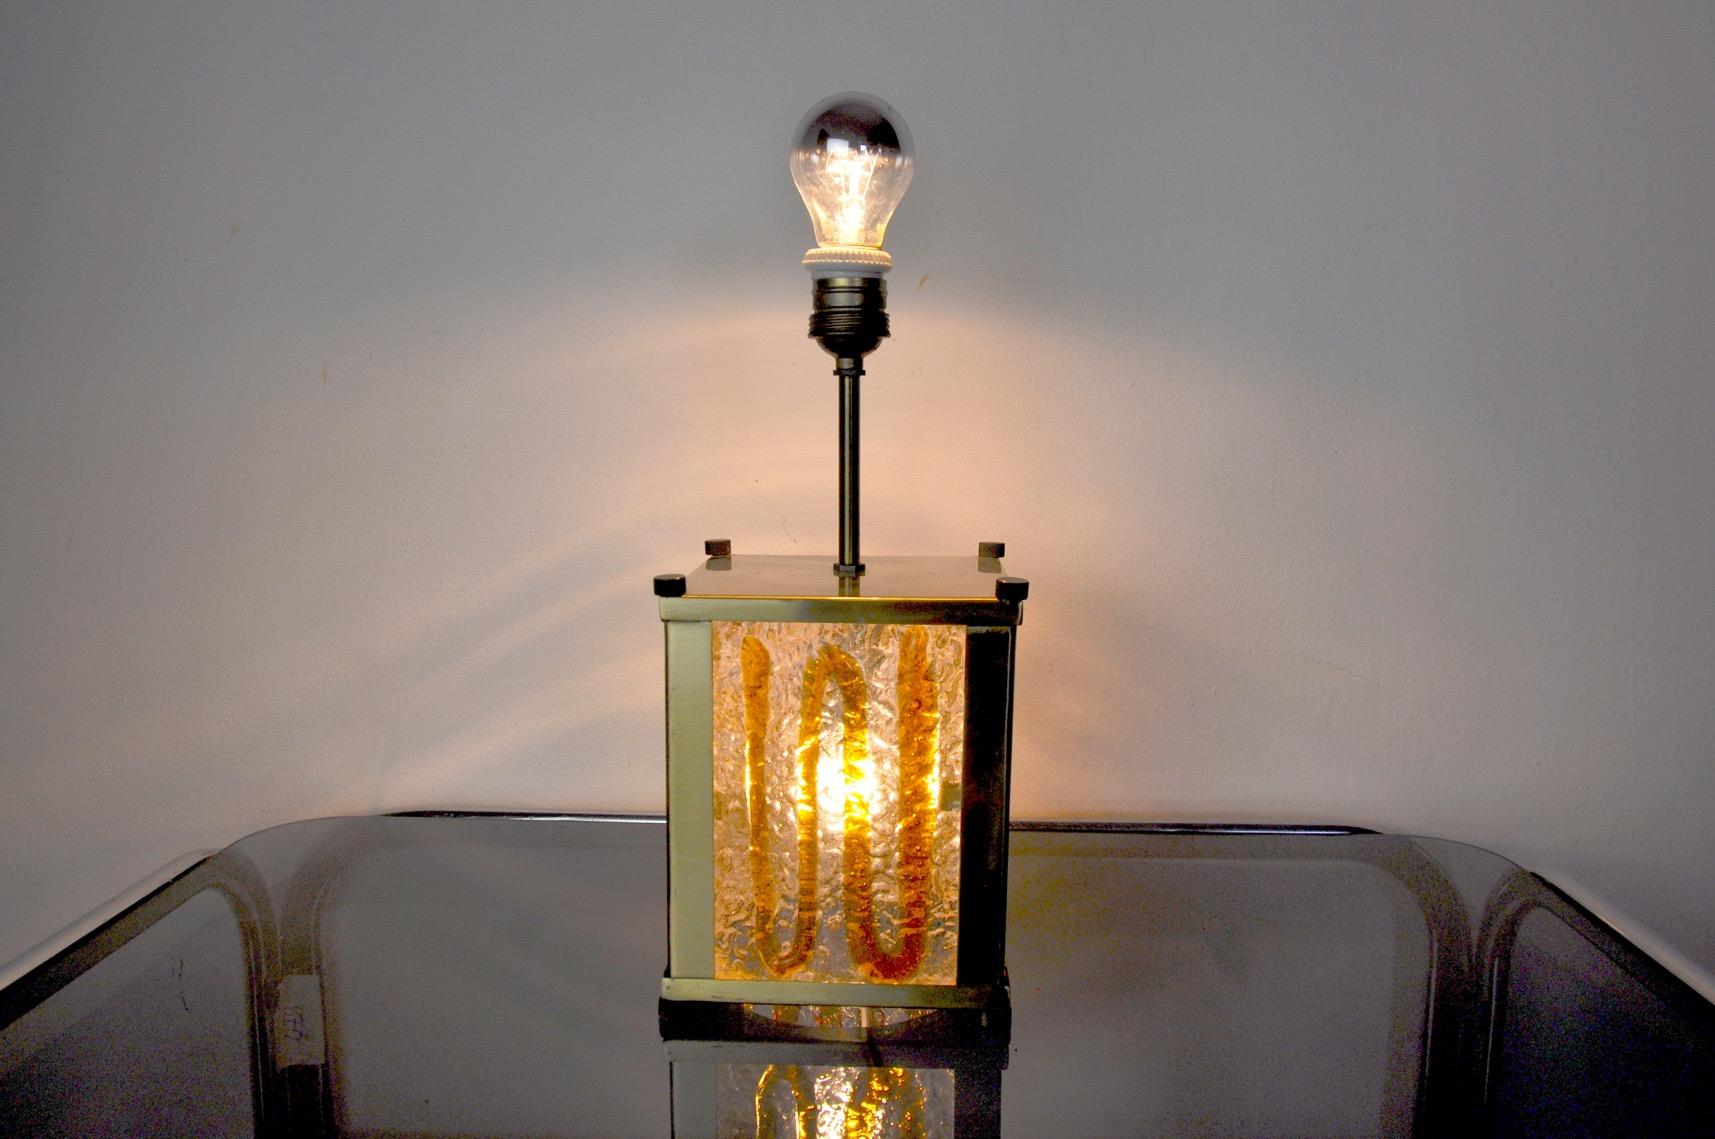 Lampe Murano mazzega désignée et produite en Italie dans les années 1960. 4 plaques de cristal en verre de Murano soufflé orange sont réparties en carré, soutenues par une structure en métal doré.

Possibilité de mettre un abat-jour.

Une pièce